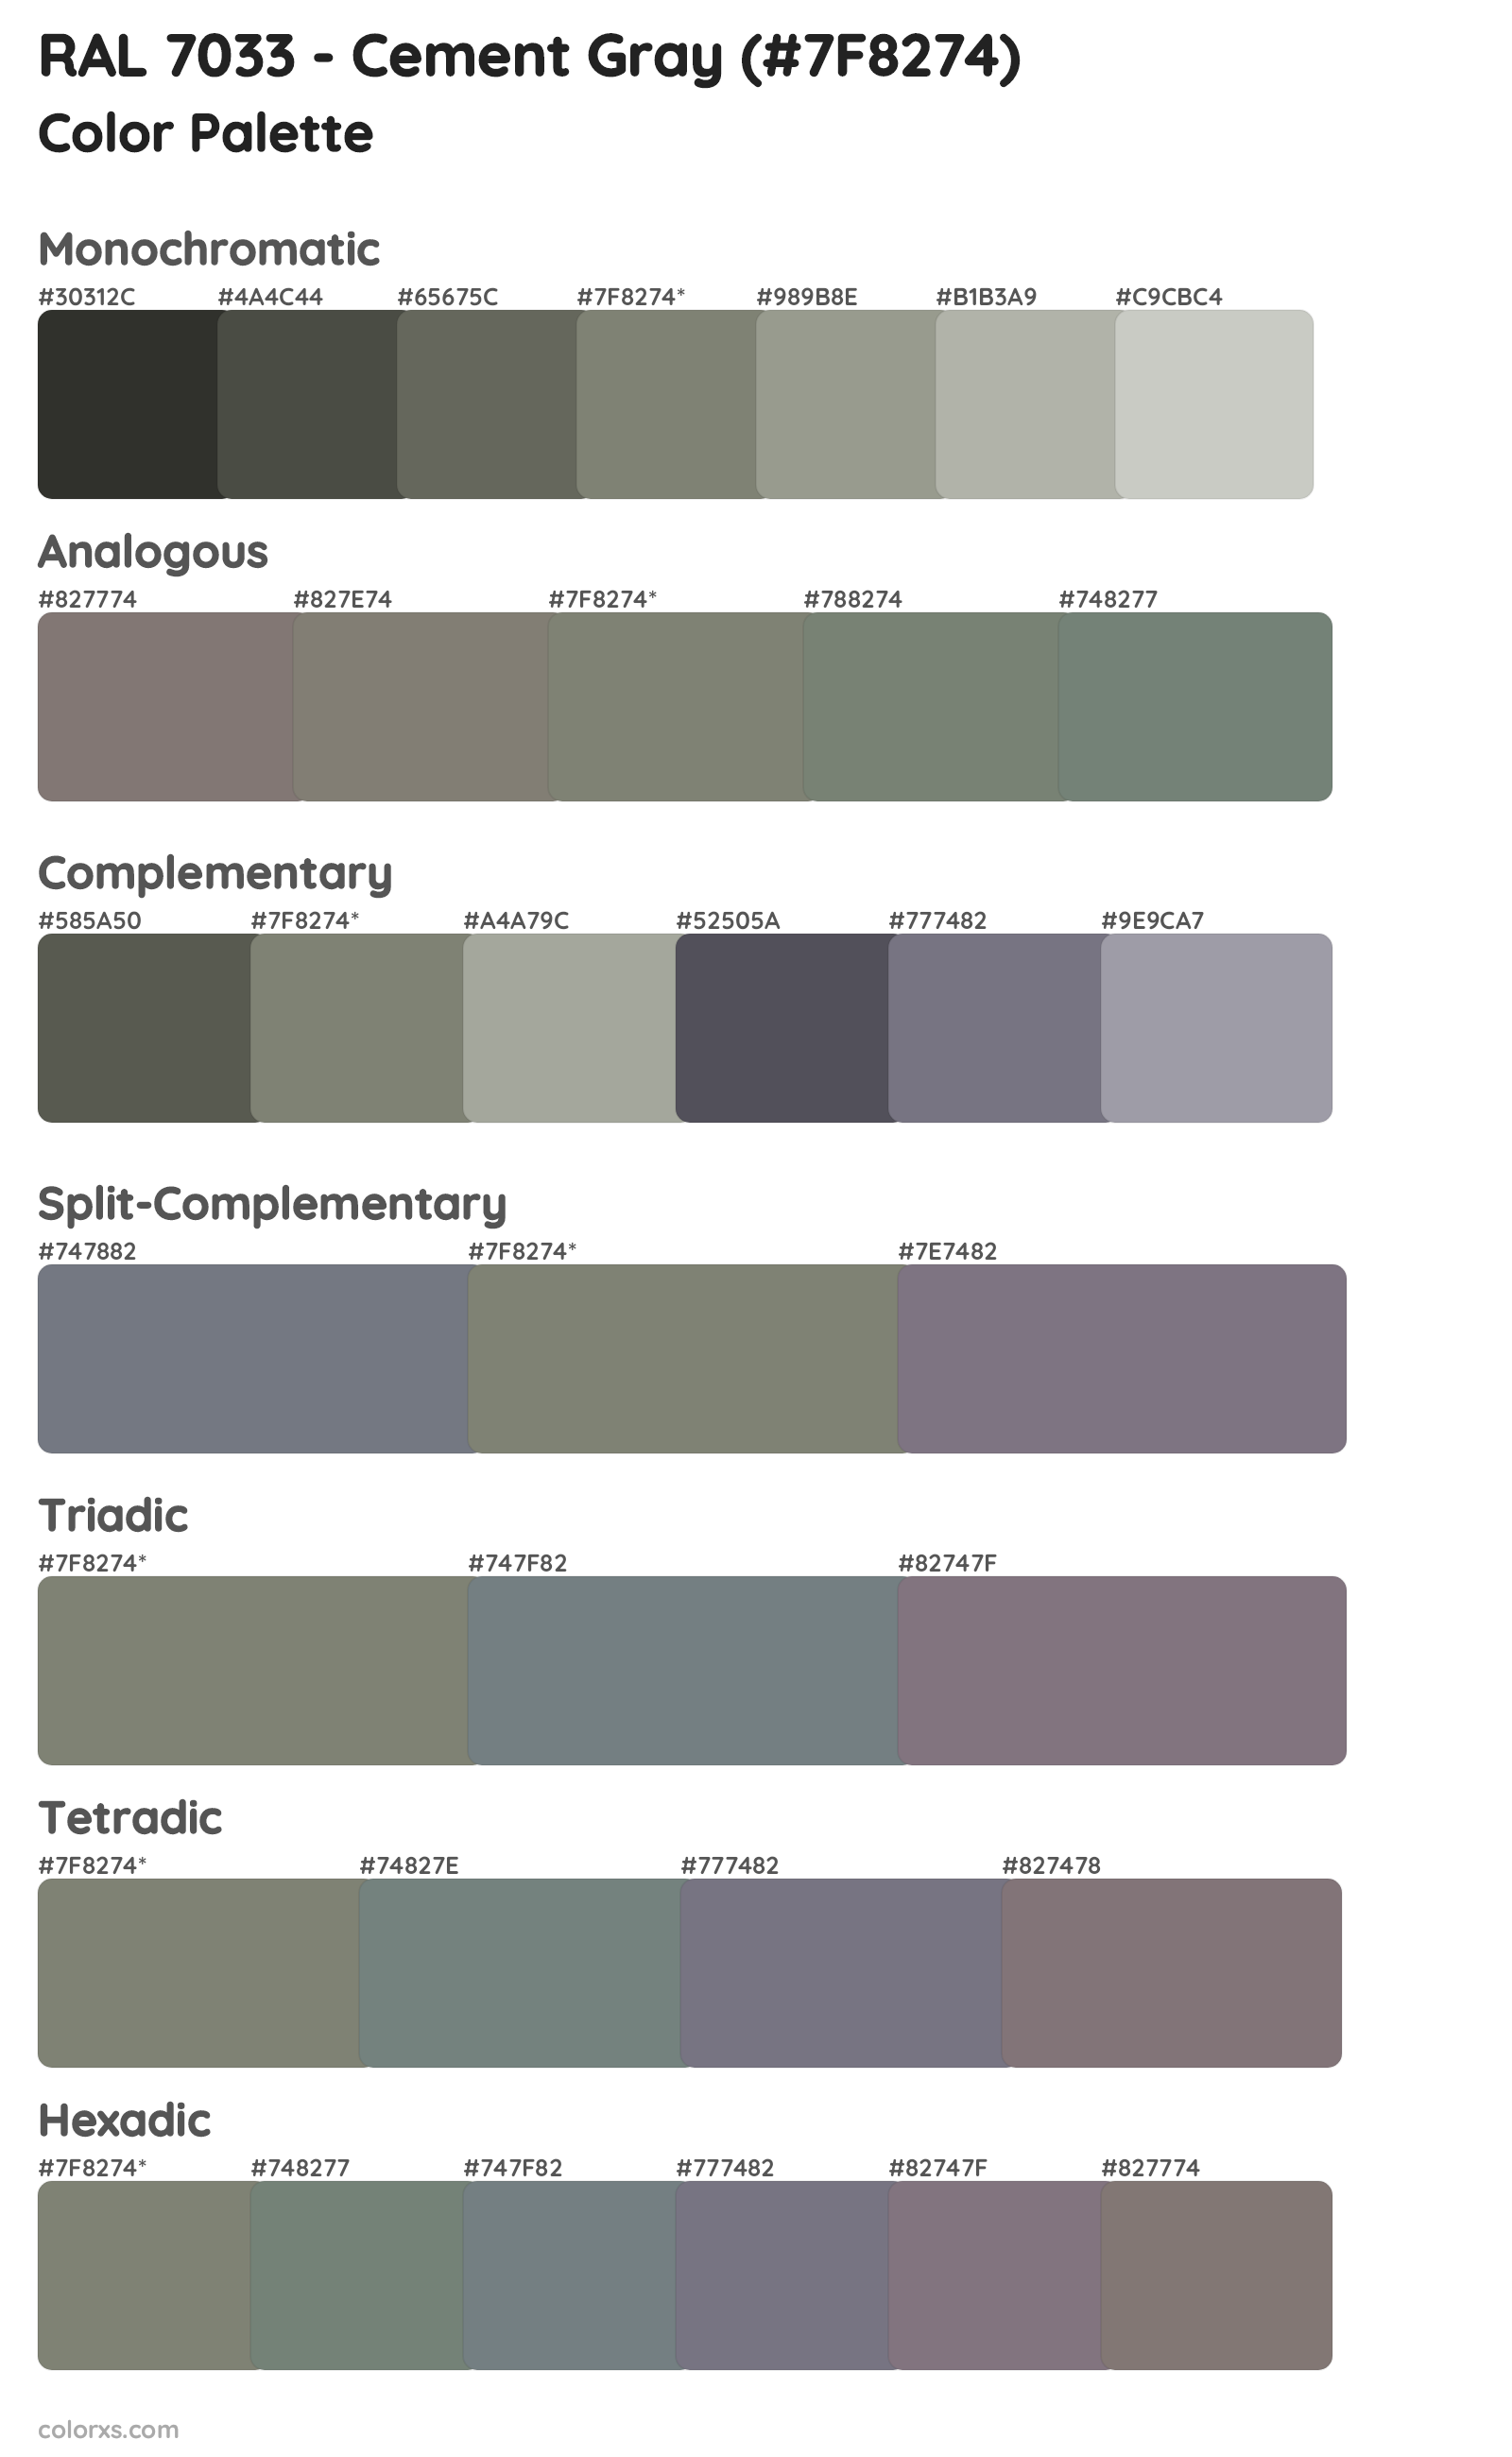 RAL 7033 - Cement Gray Color Scheme Palettes